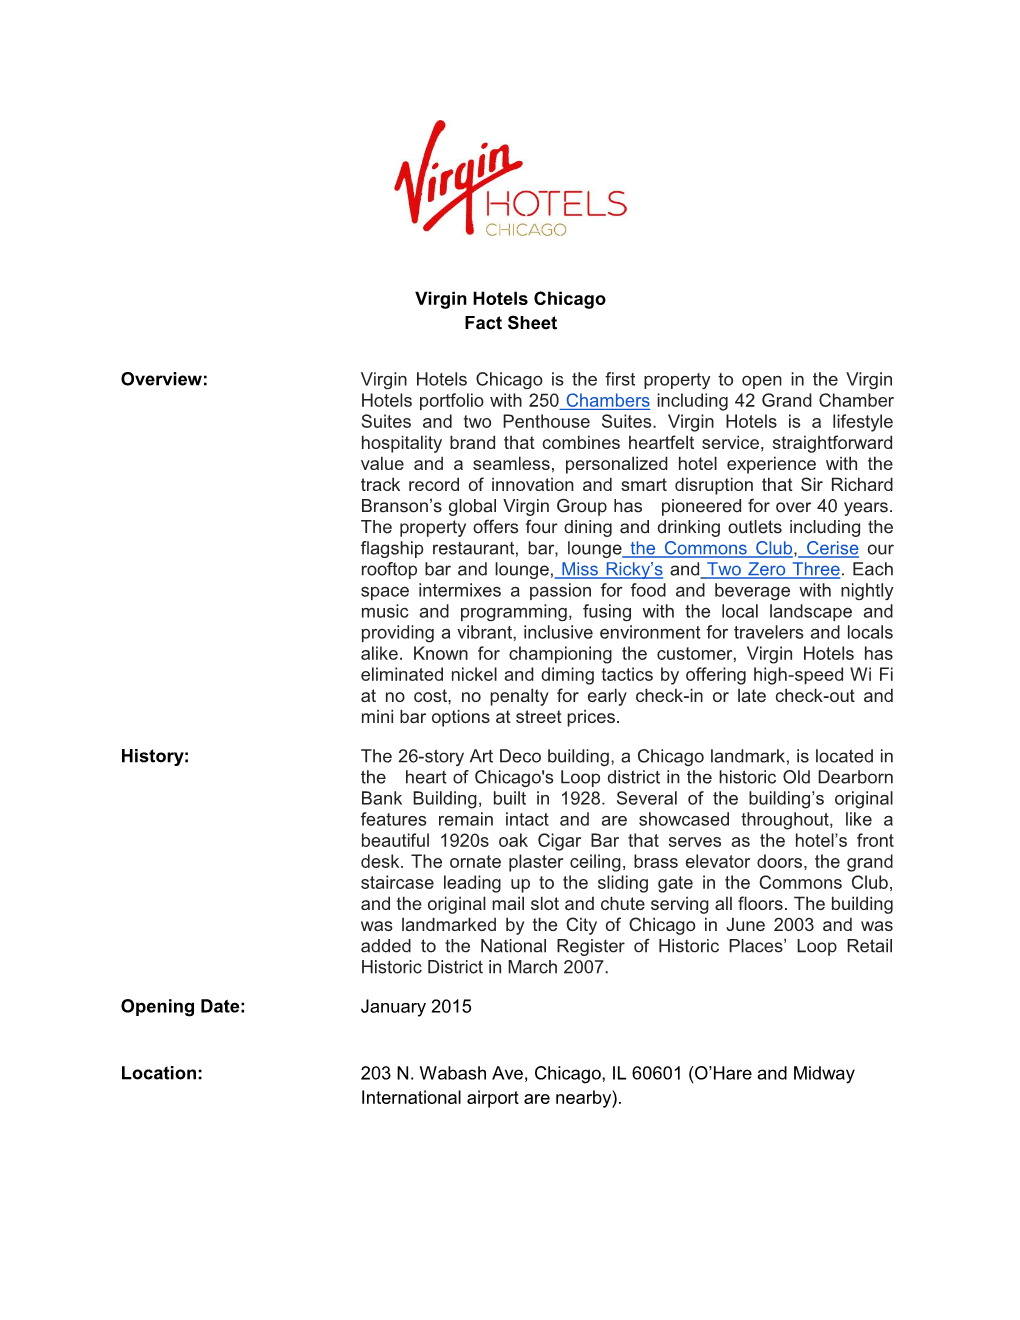 Virgin Hotels Chicago Fact Sheet Overview